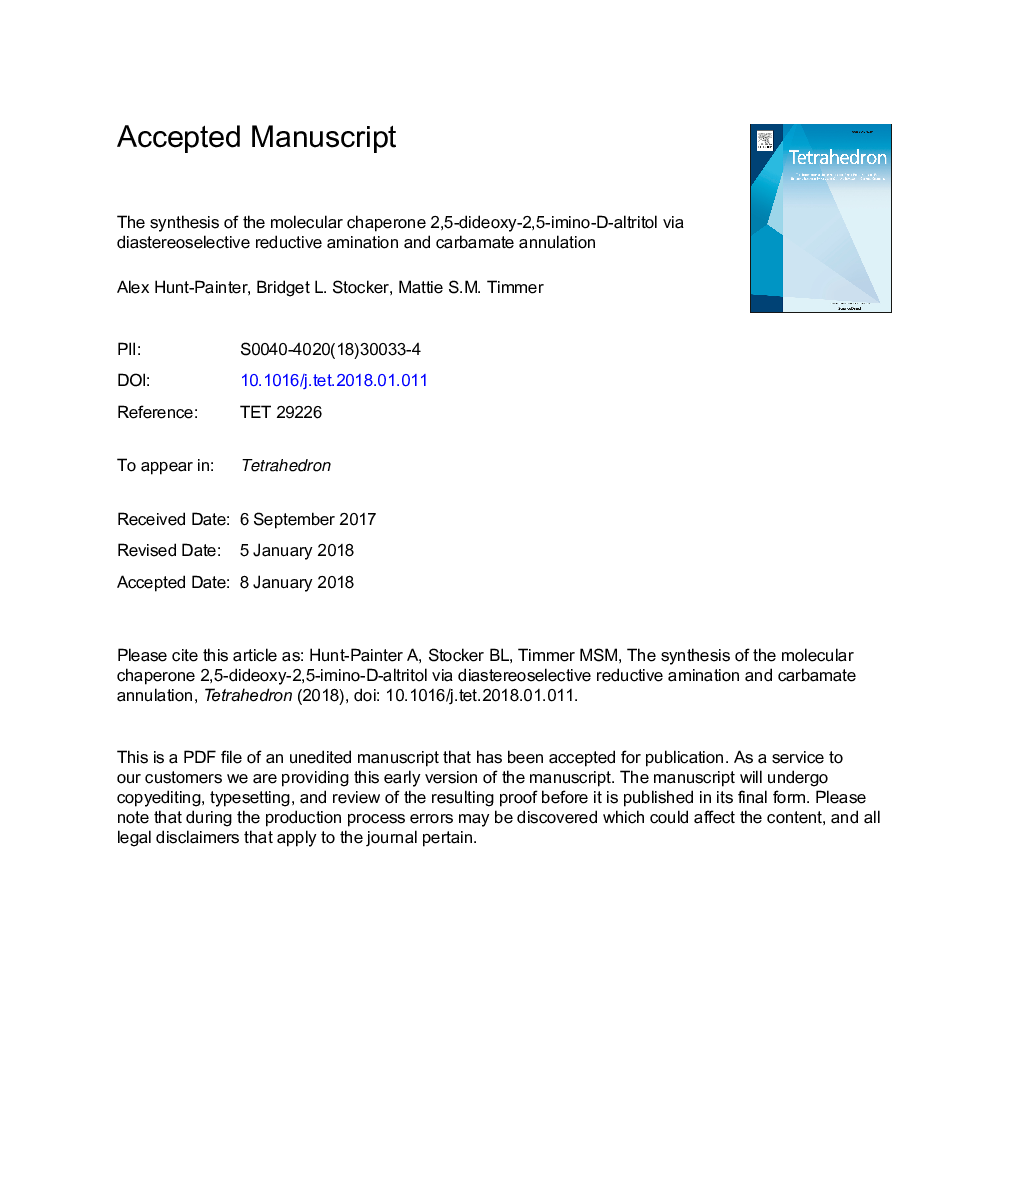 سنتز مولکولی 2.5 دییدوکسیم 2،5-ایمین دی آلتریتول از طریق آمین سازی واکنش دهنده دیاستروئیدی و حل شدن کربامات 